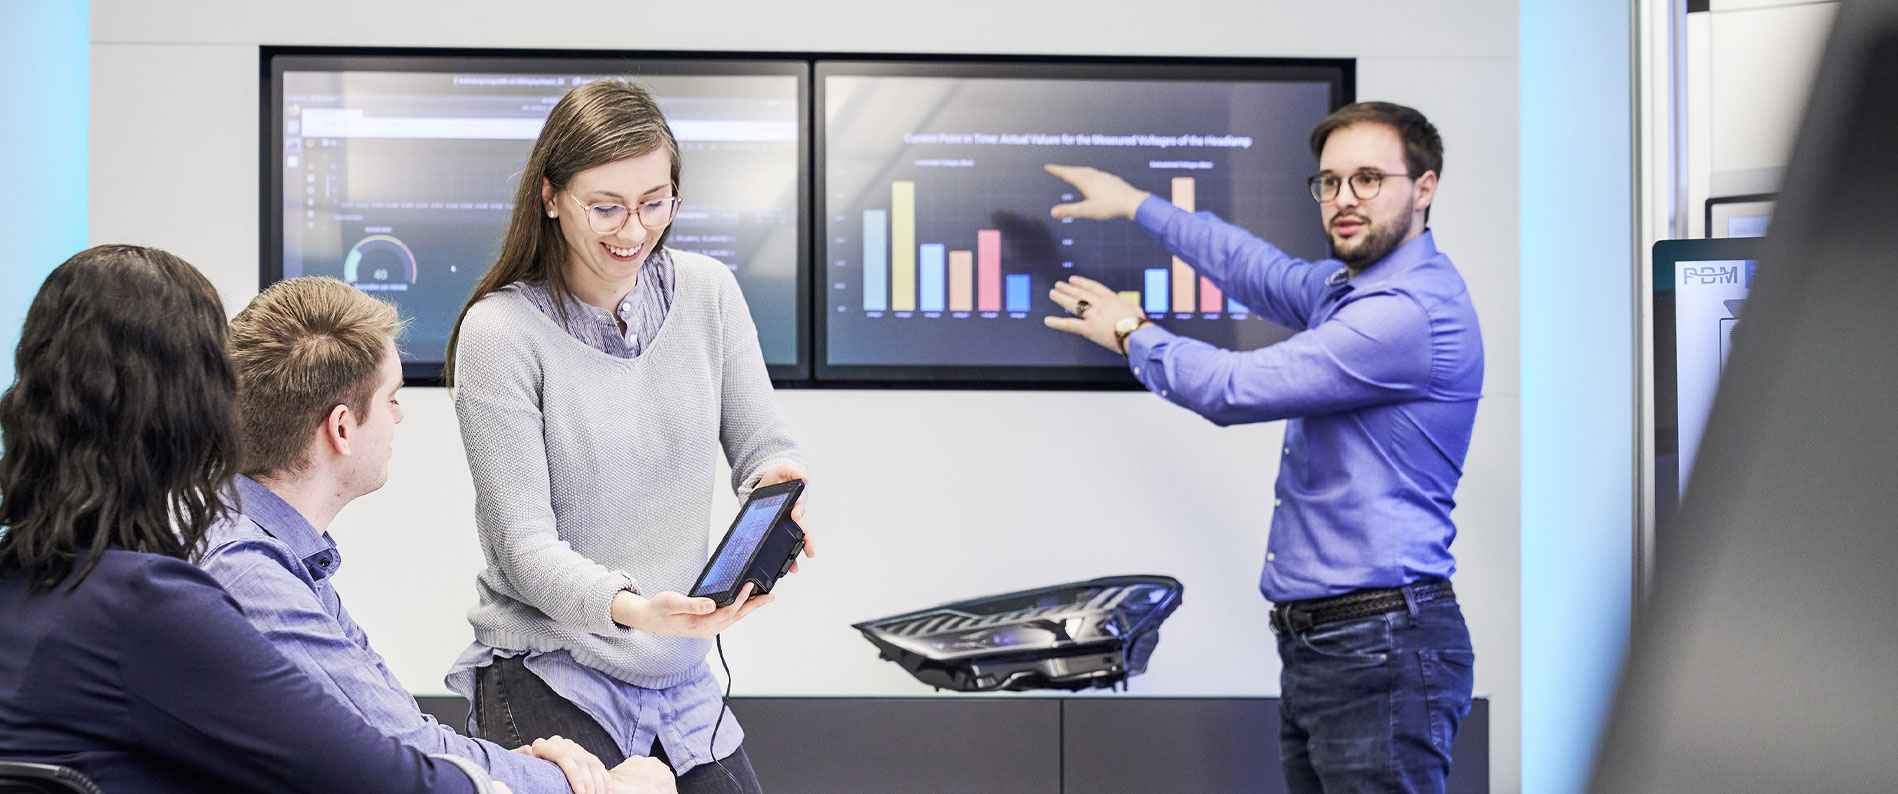 Frau zeigt zwei Personen Daten auf dem Tablet, während Mann auf Säulendiagramm am Bildschirm zeigt